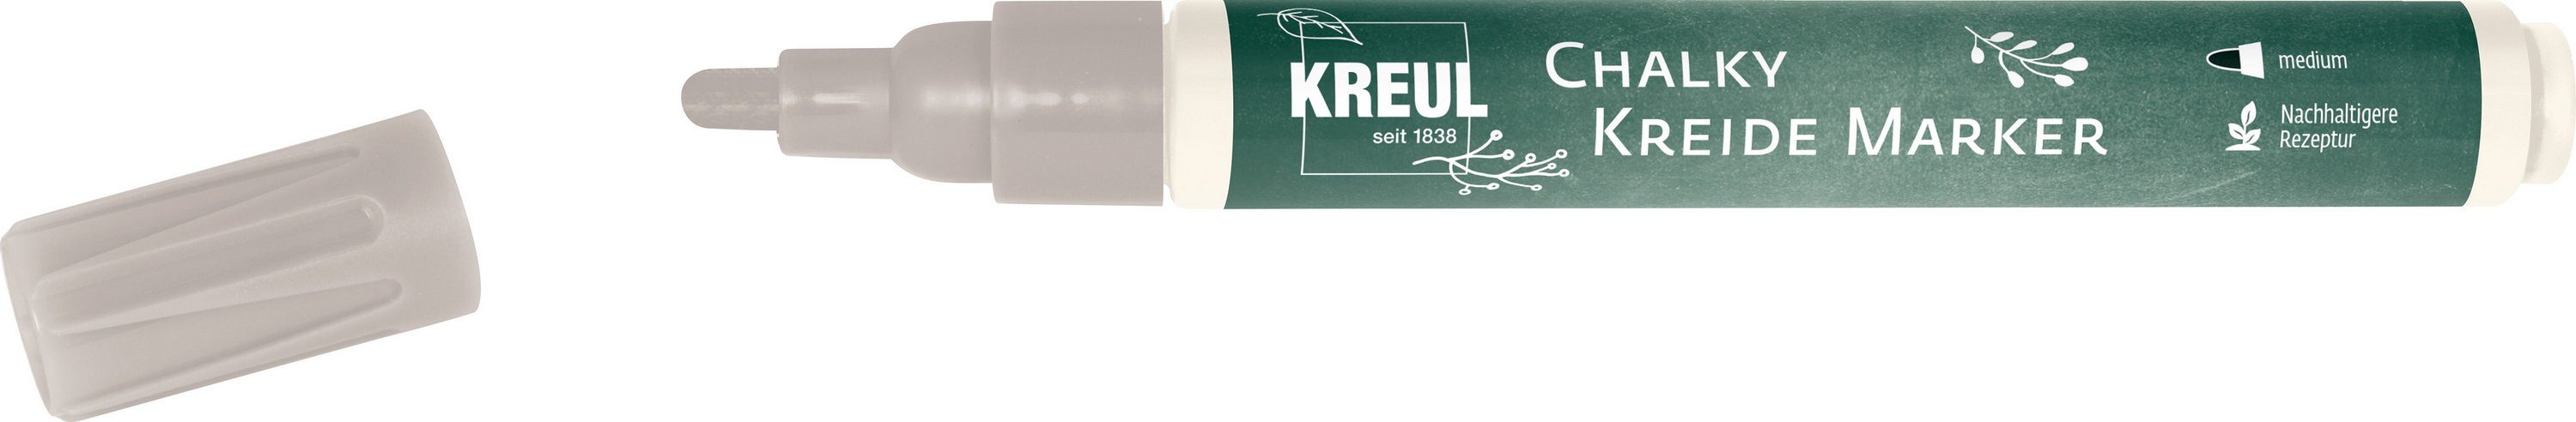 Kreul Kreidemarker Chalky, 2-3mm Strichstärke Noble Nougat